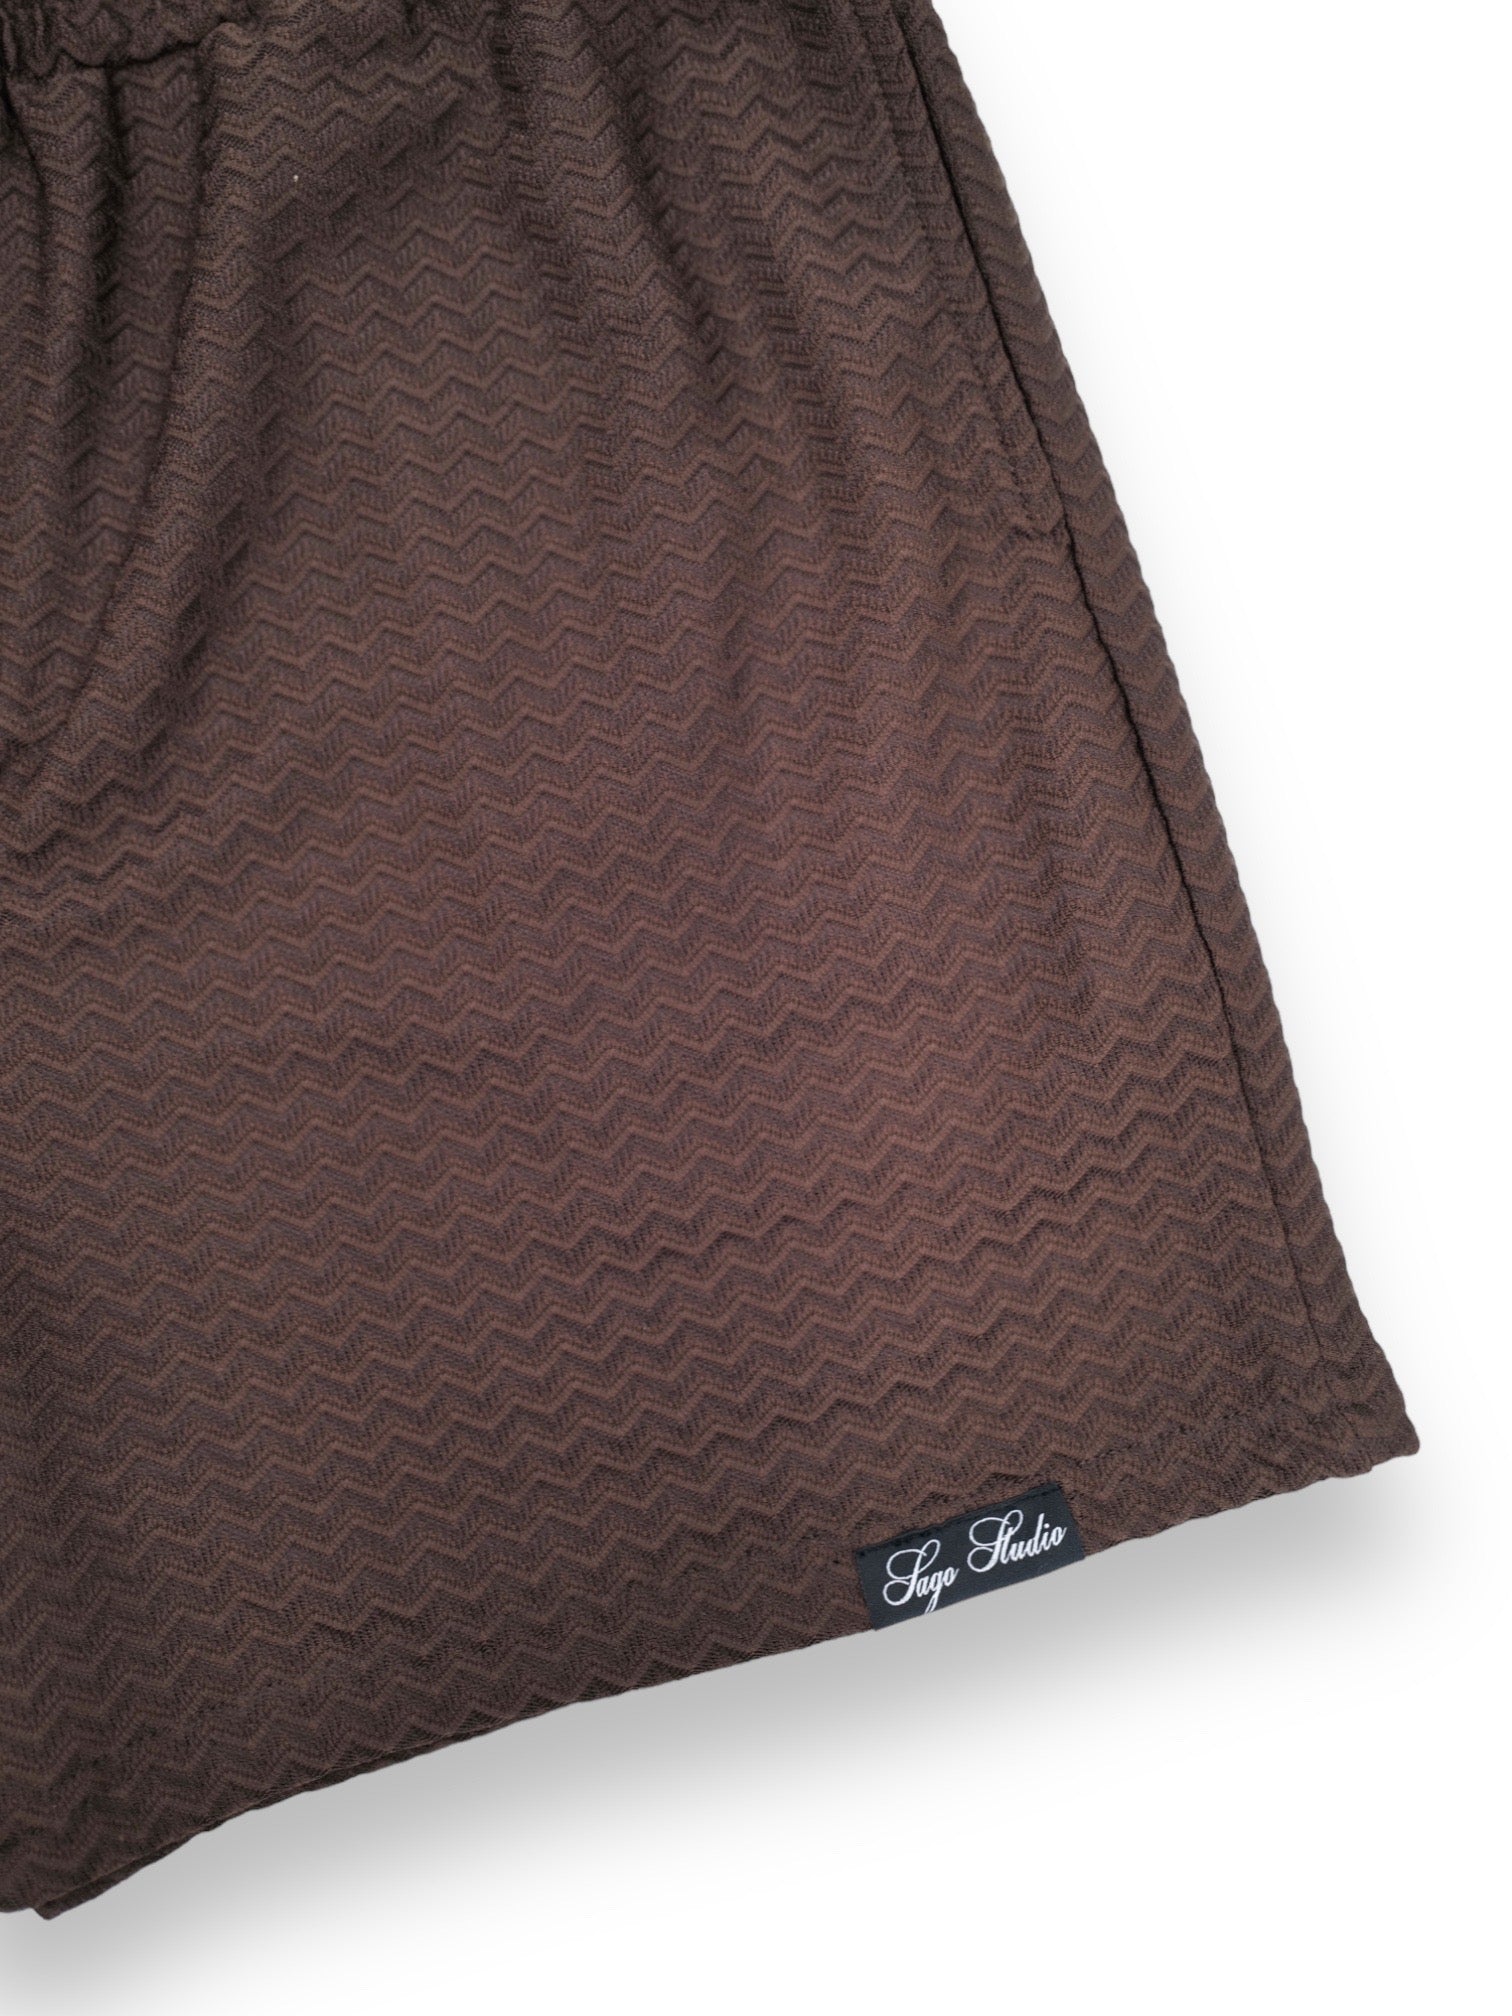 Sago Studio matching shorts (Brown)